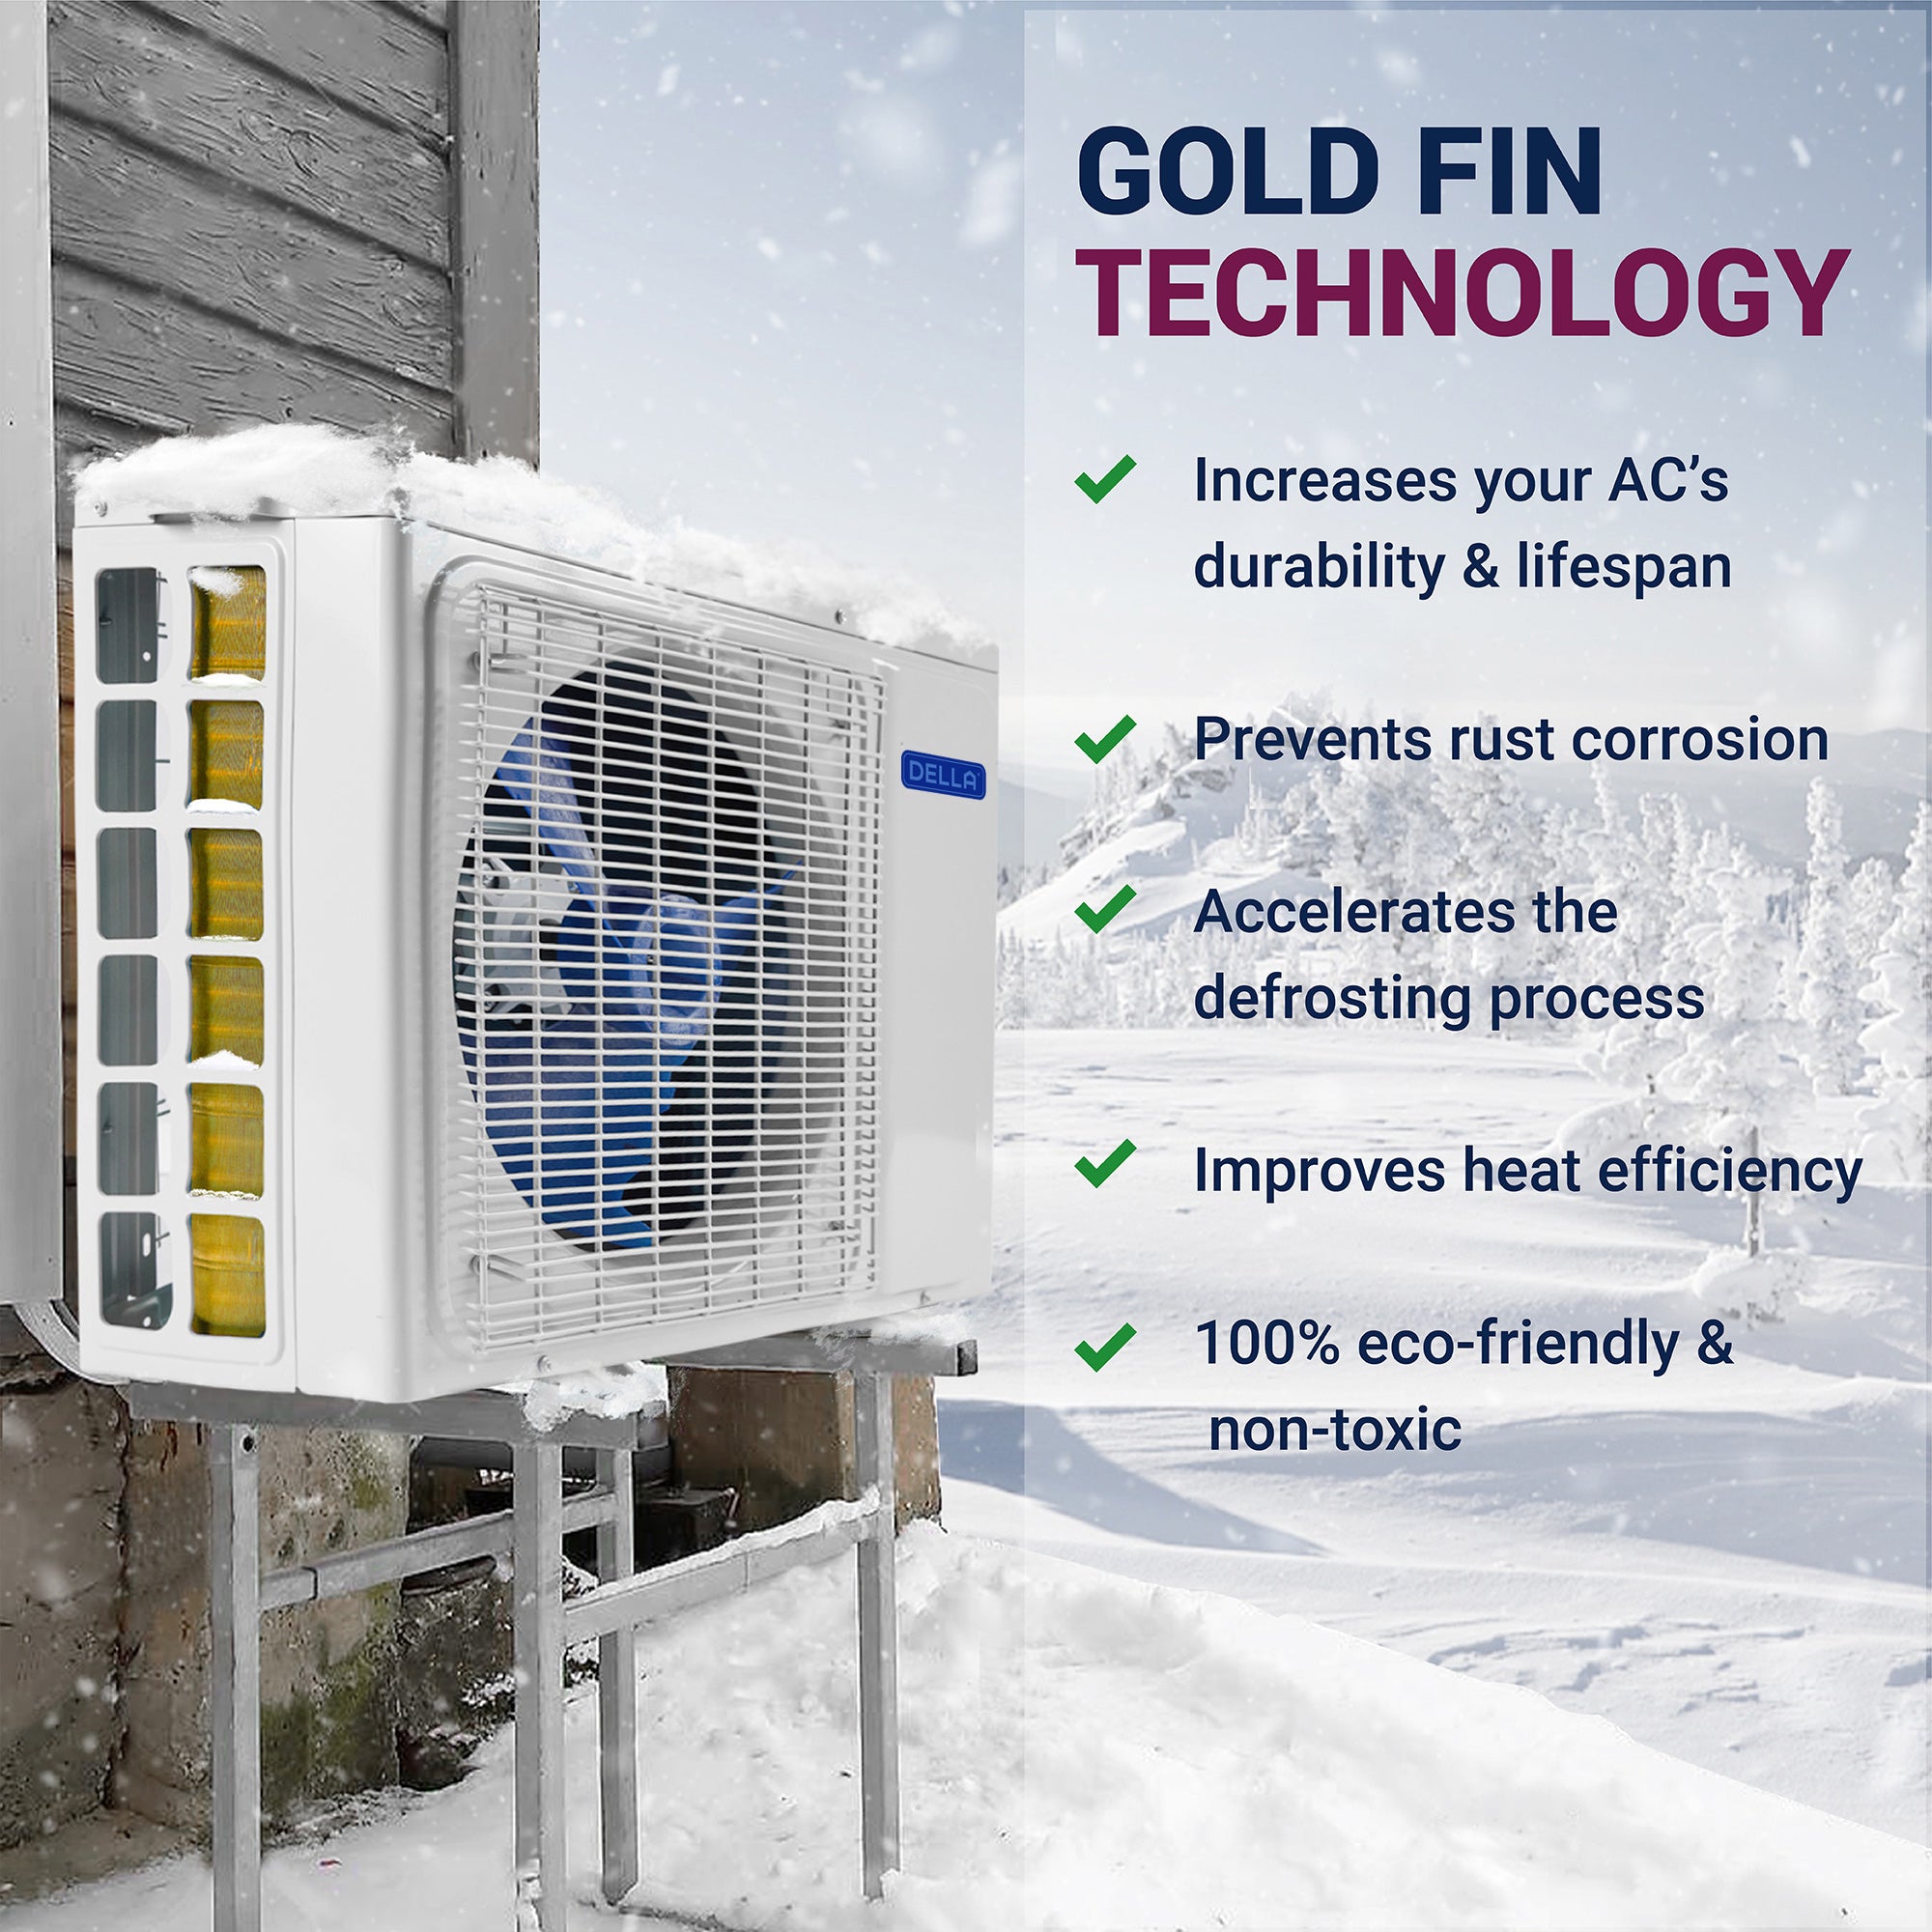 Mini Split AC Cools Up to 550 Sq.Ft R32 Refrigerant